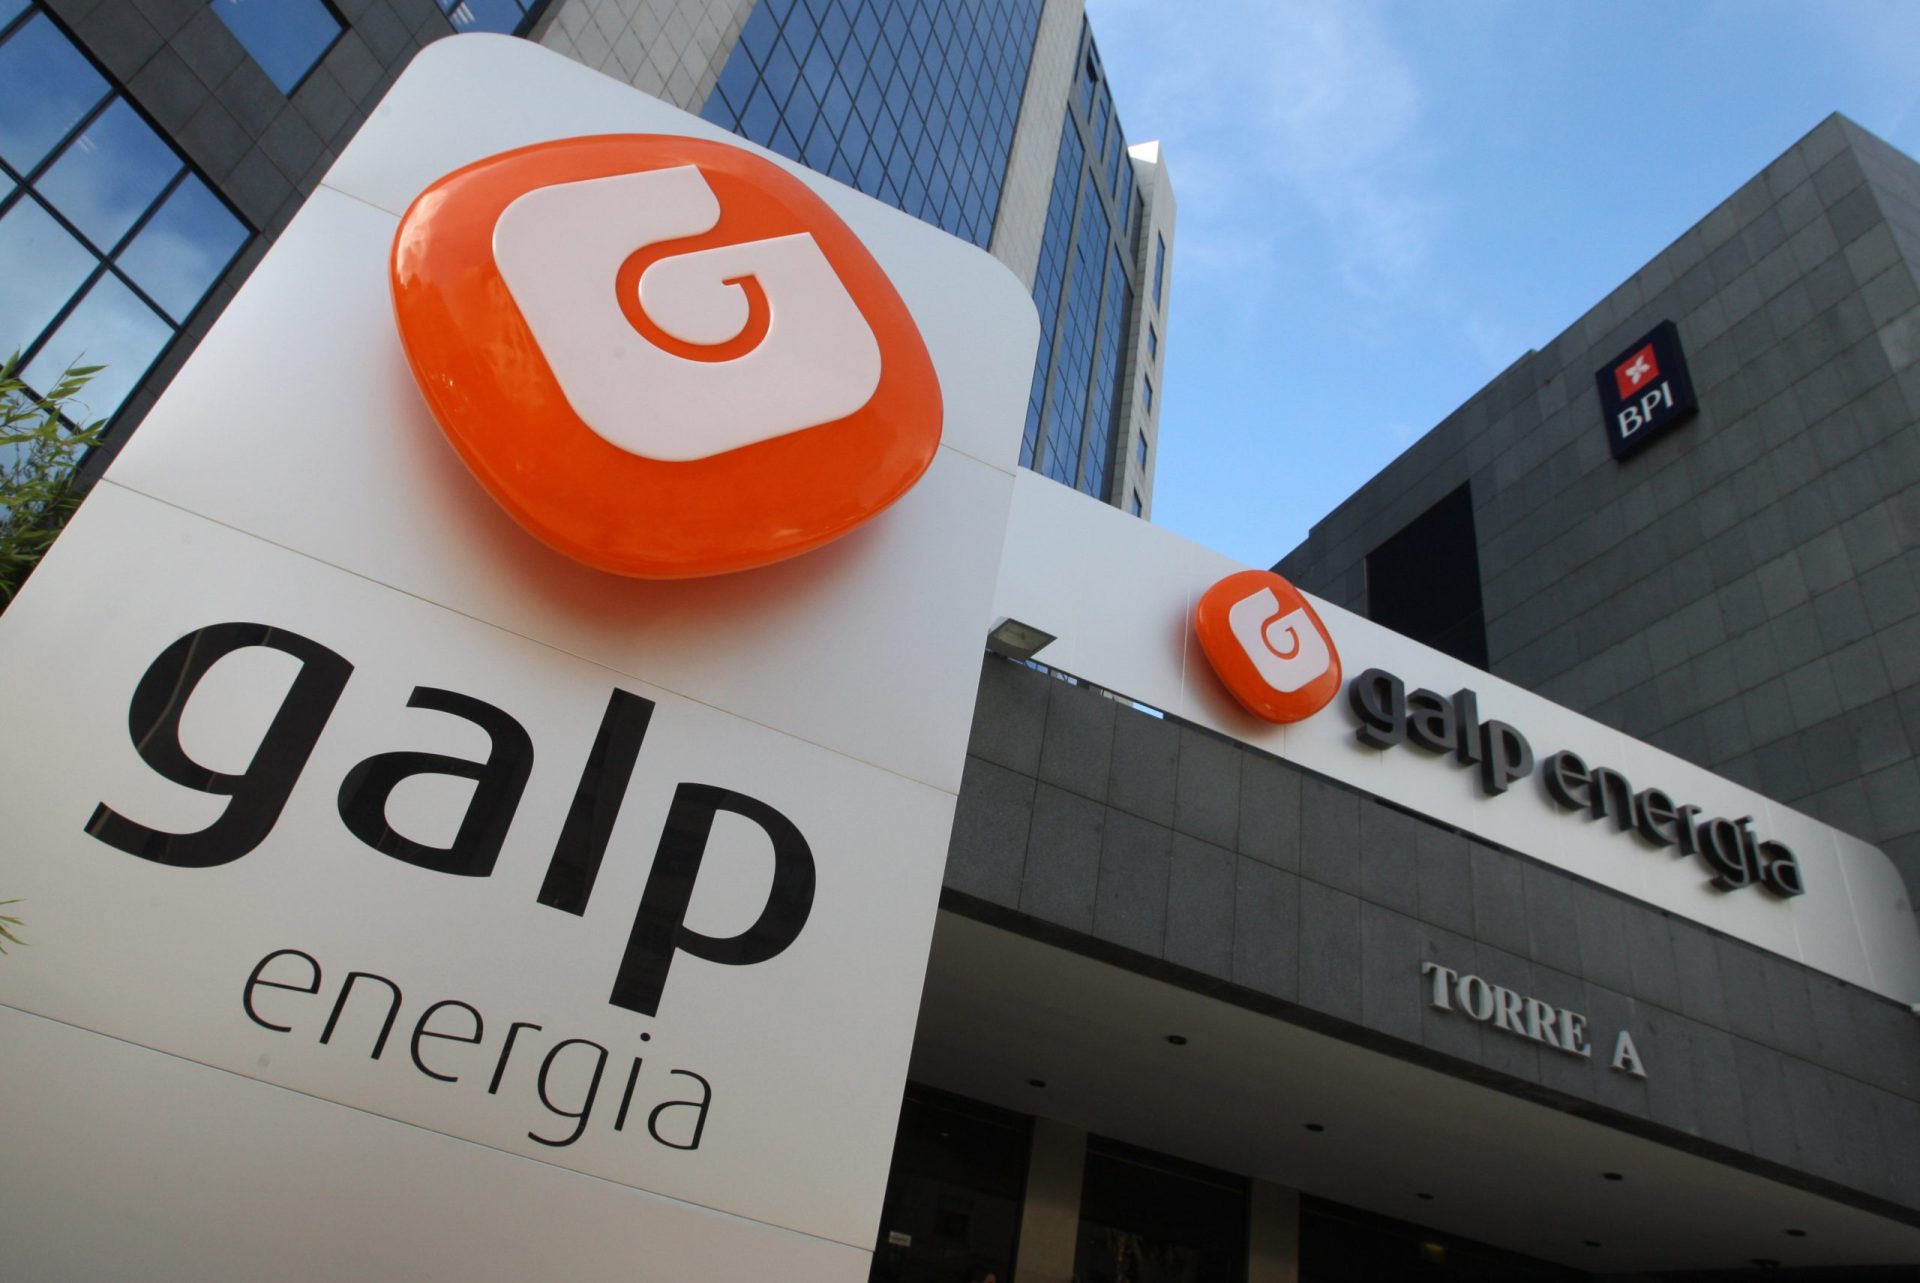 Galp passa de prejuízos a lucros de 166 milhões no 1.º semestre